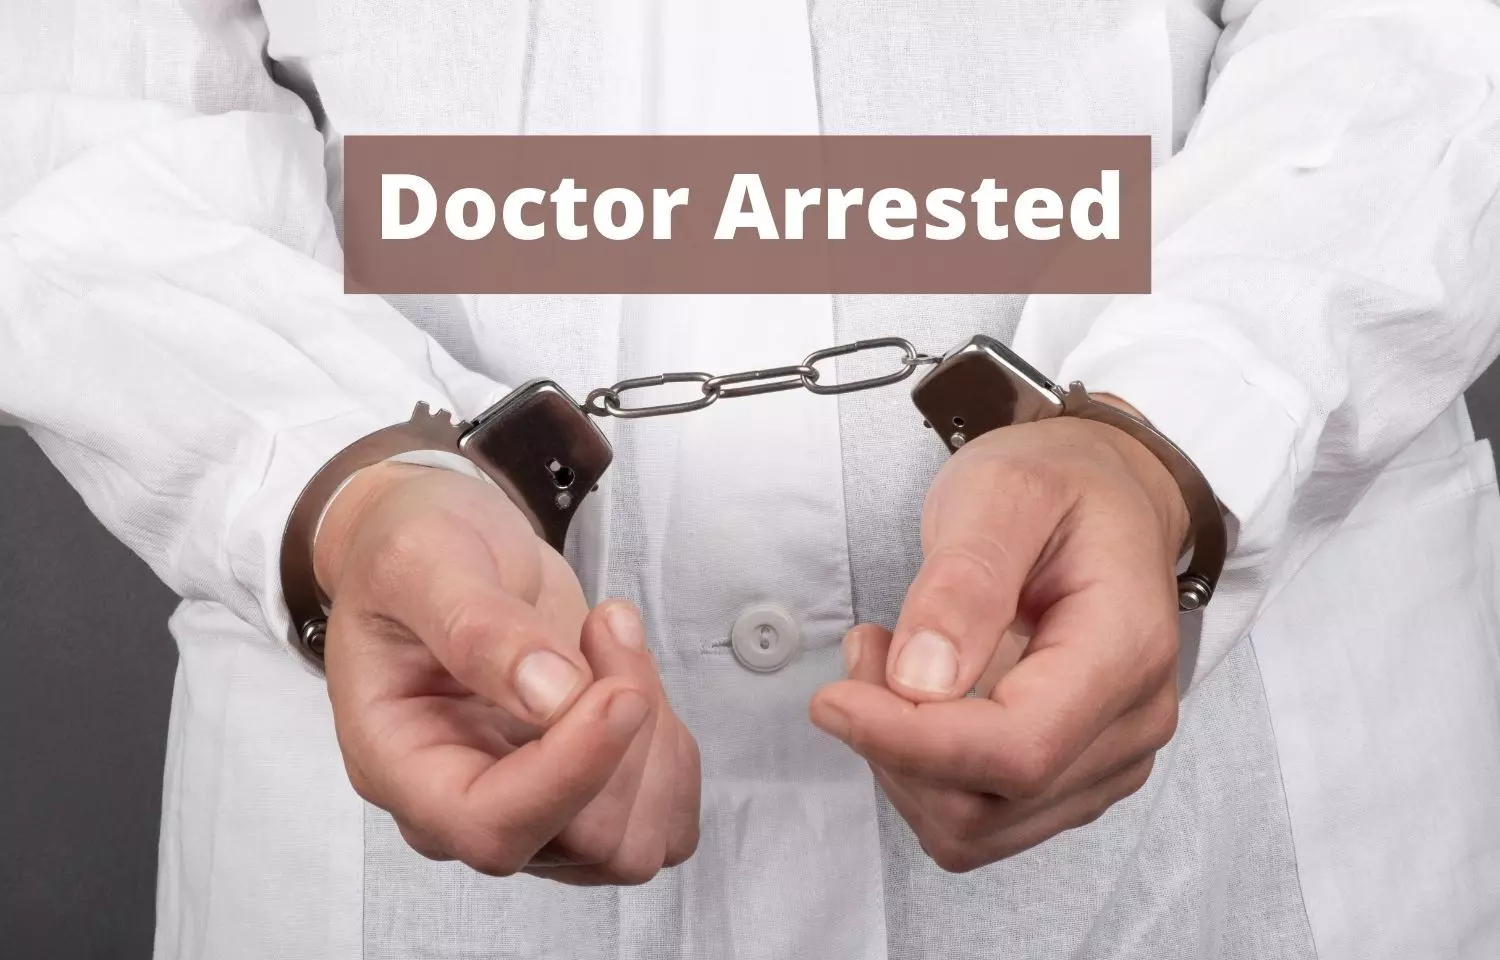 Chhattisgarh: Govt Doctor arrested for allegedly molesting nurse